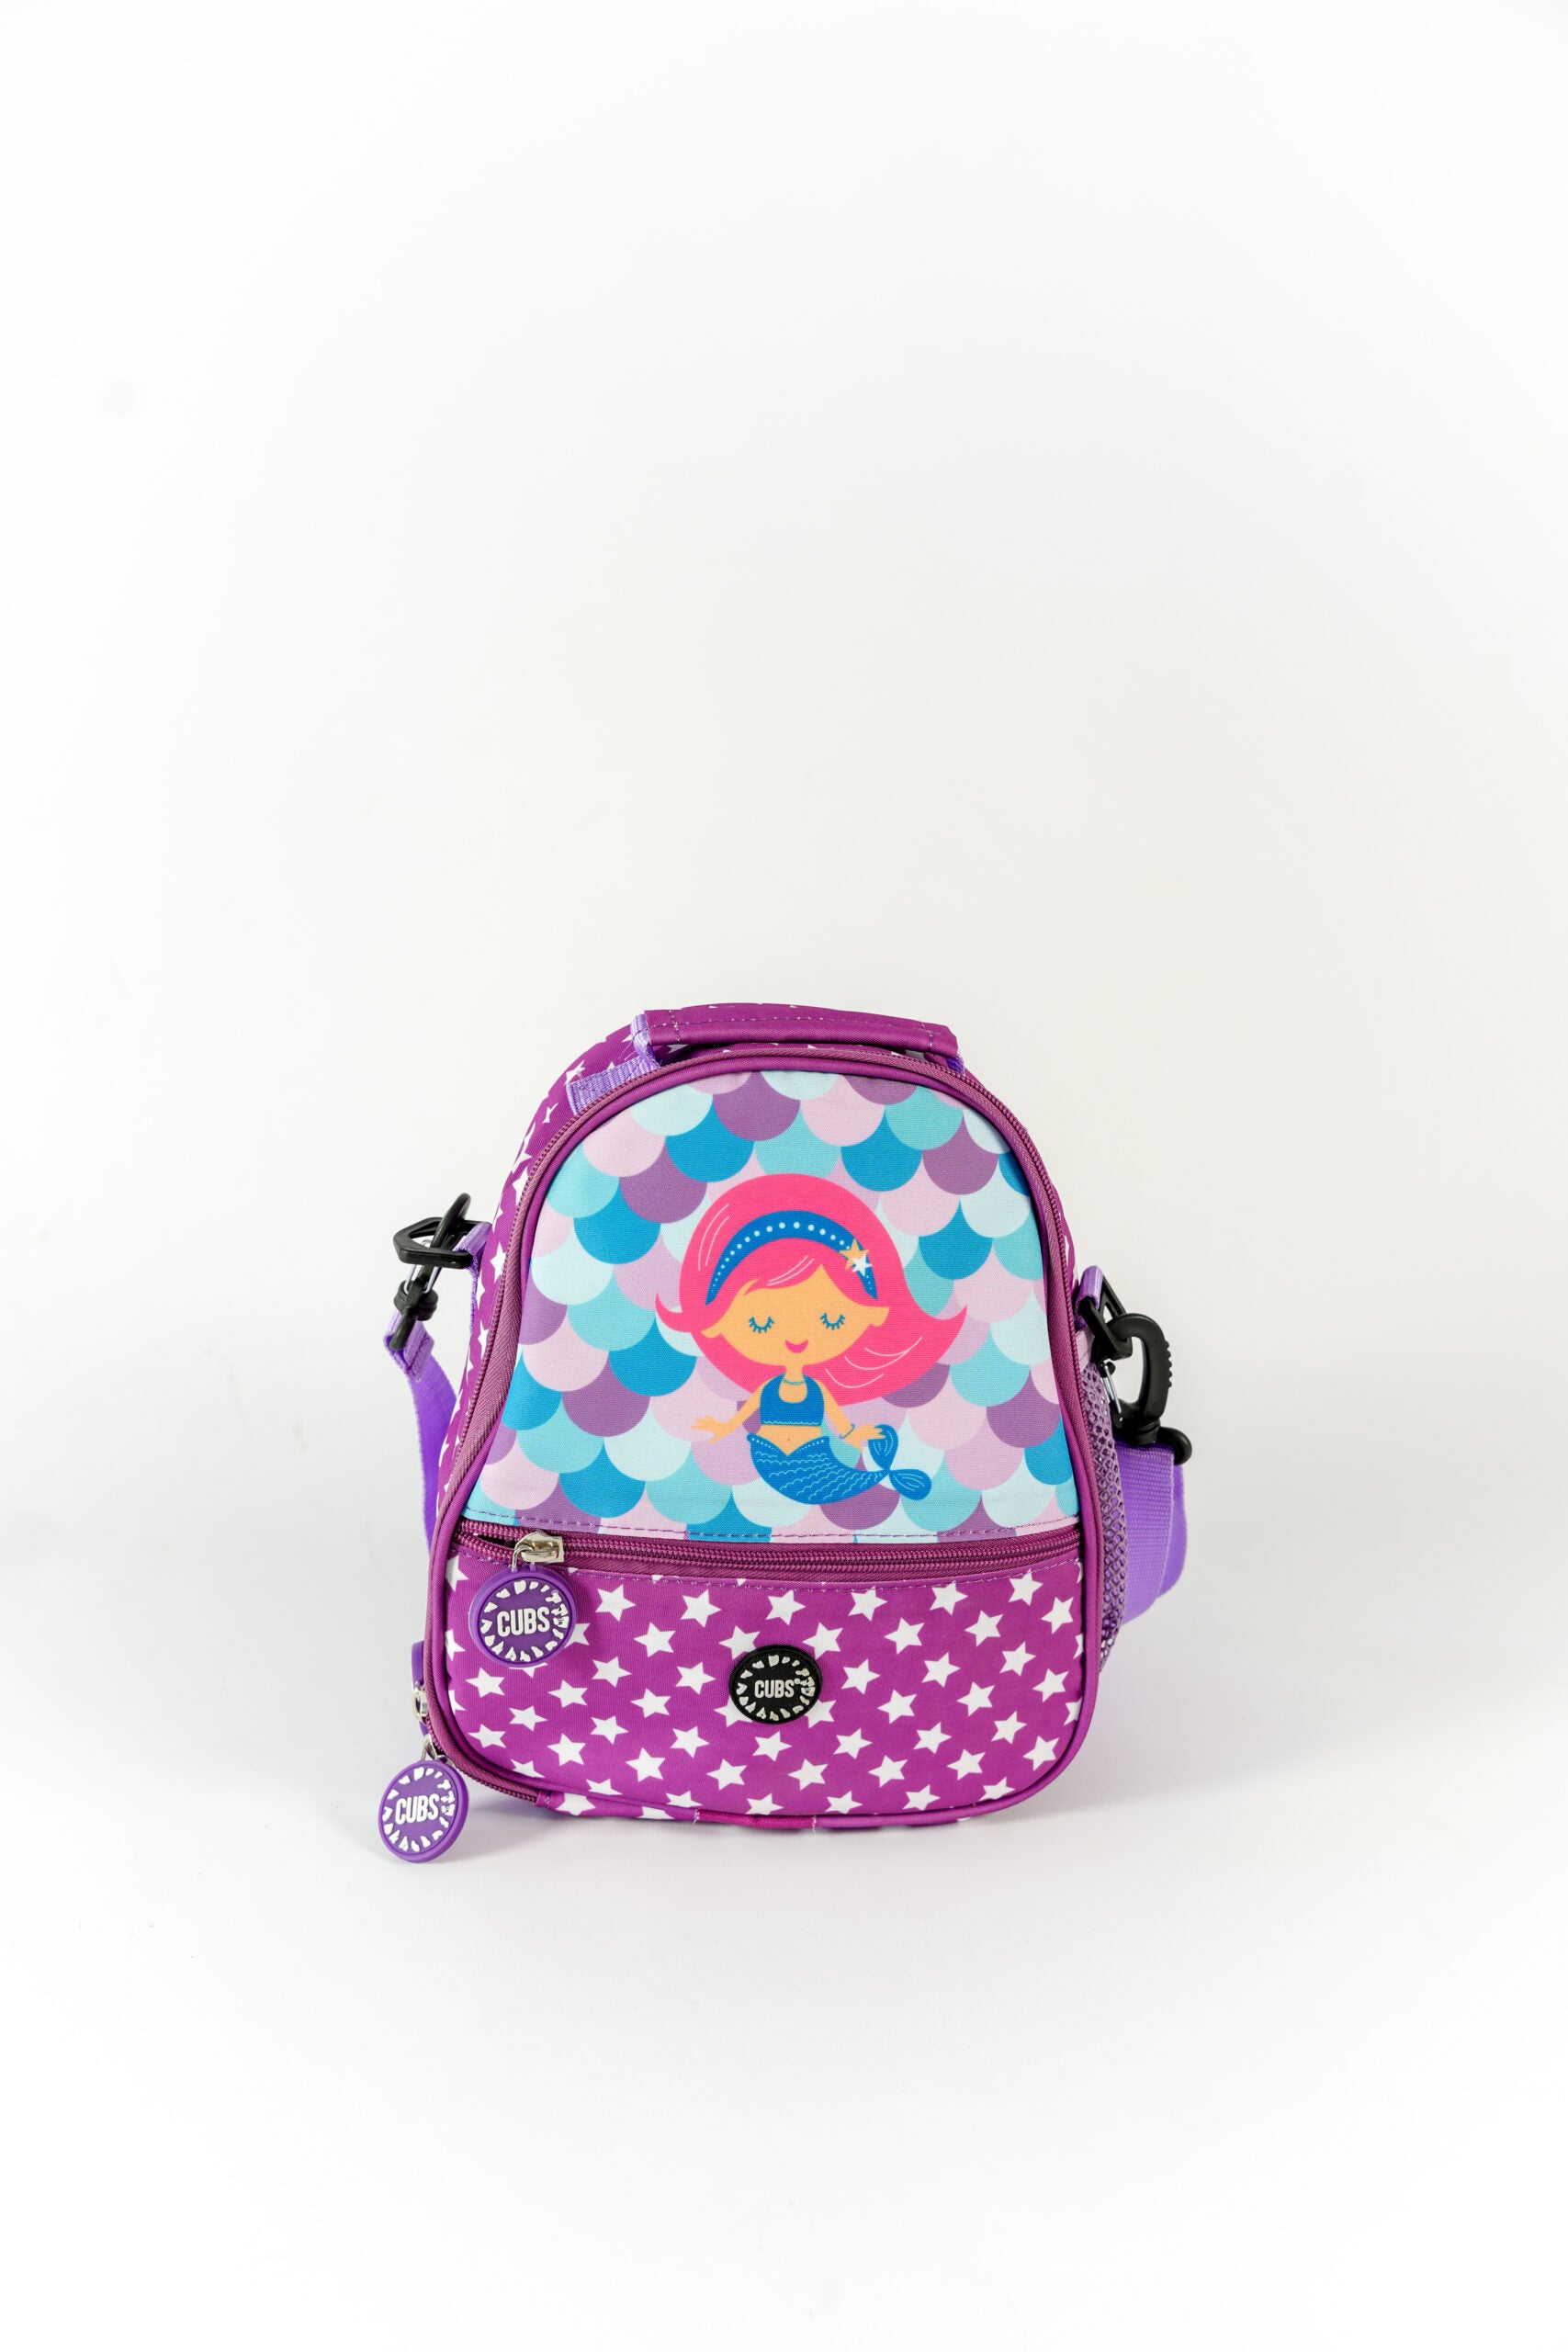 Baby Star Mermaid Pre-School Lunch bag